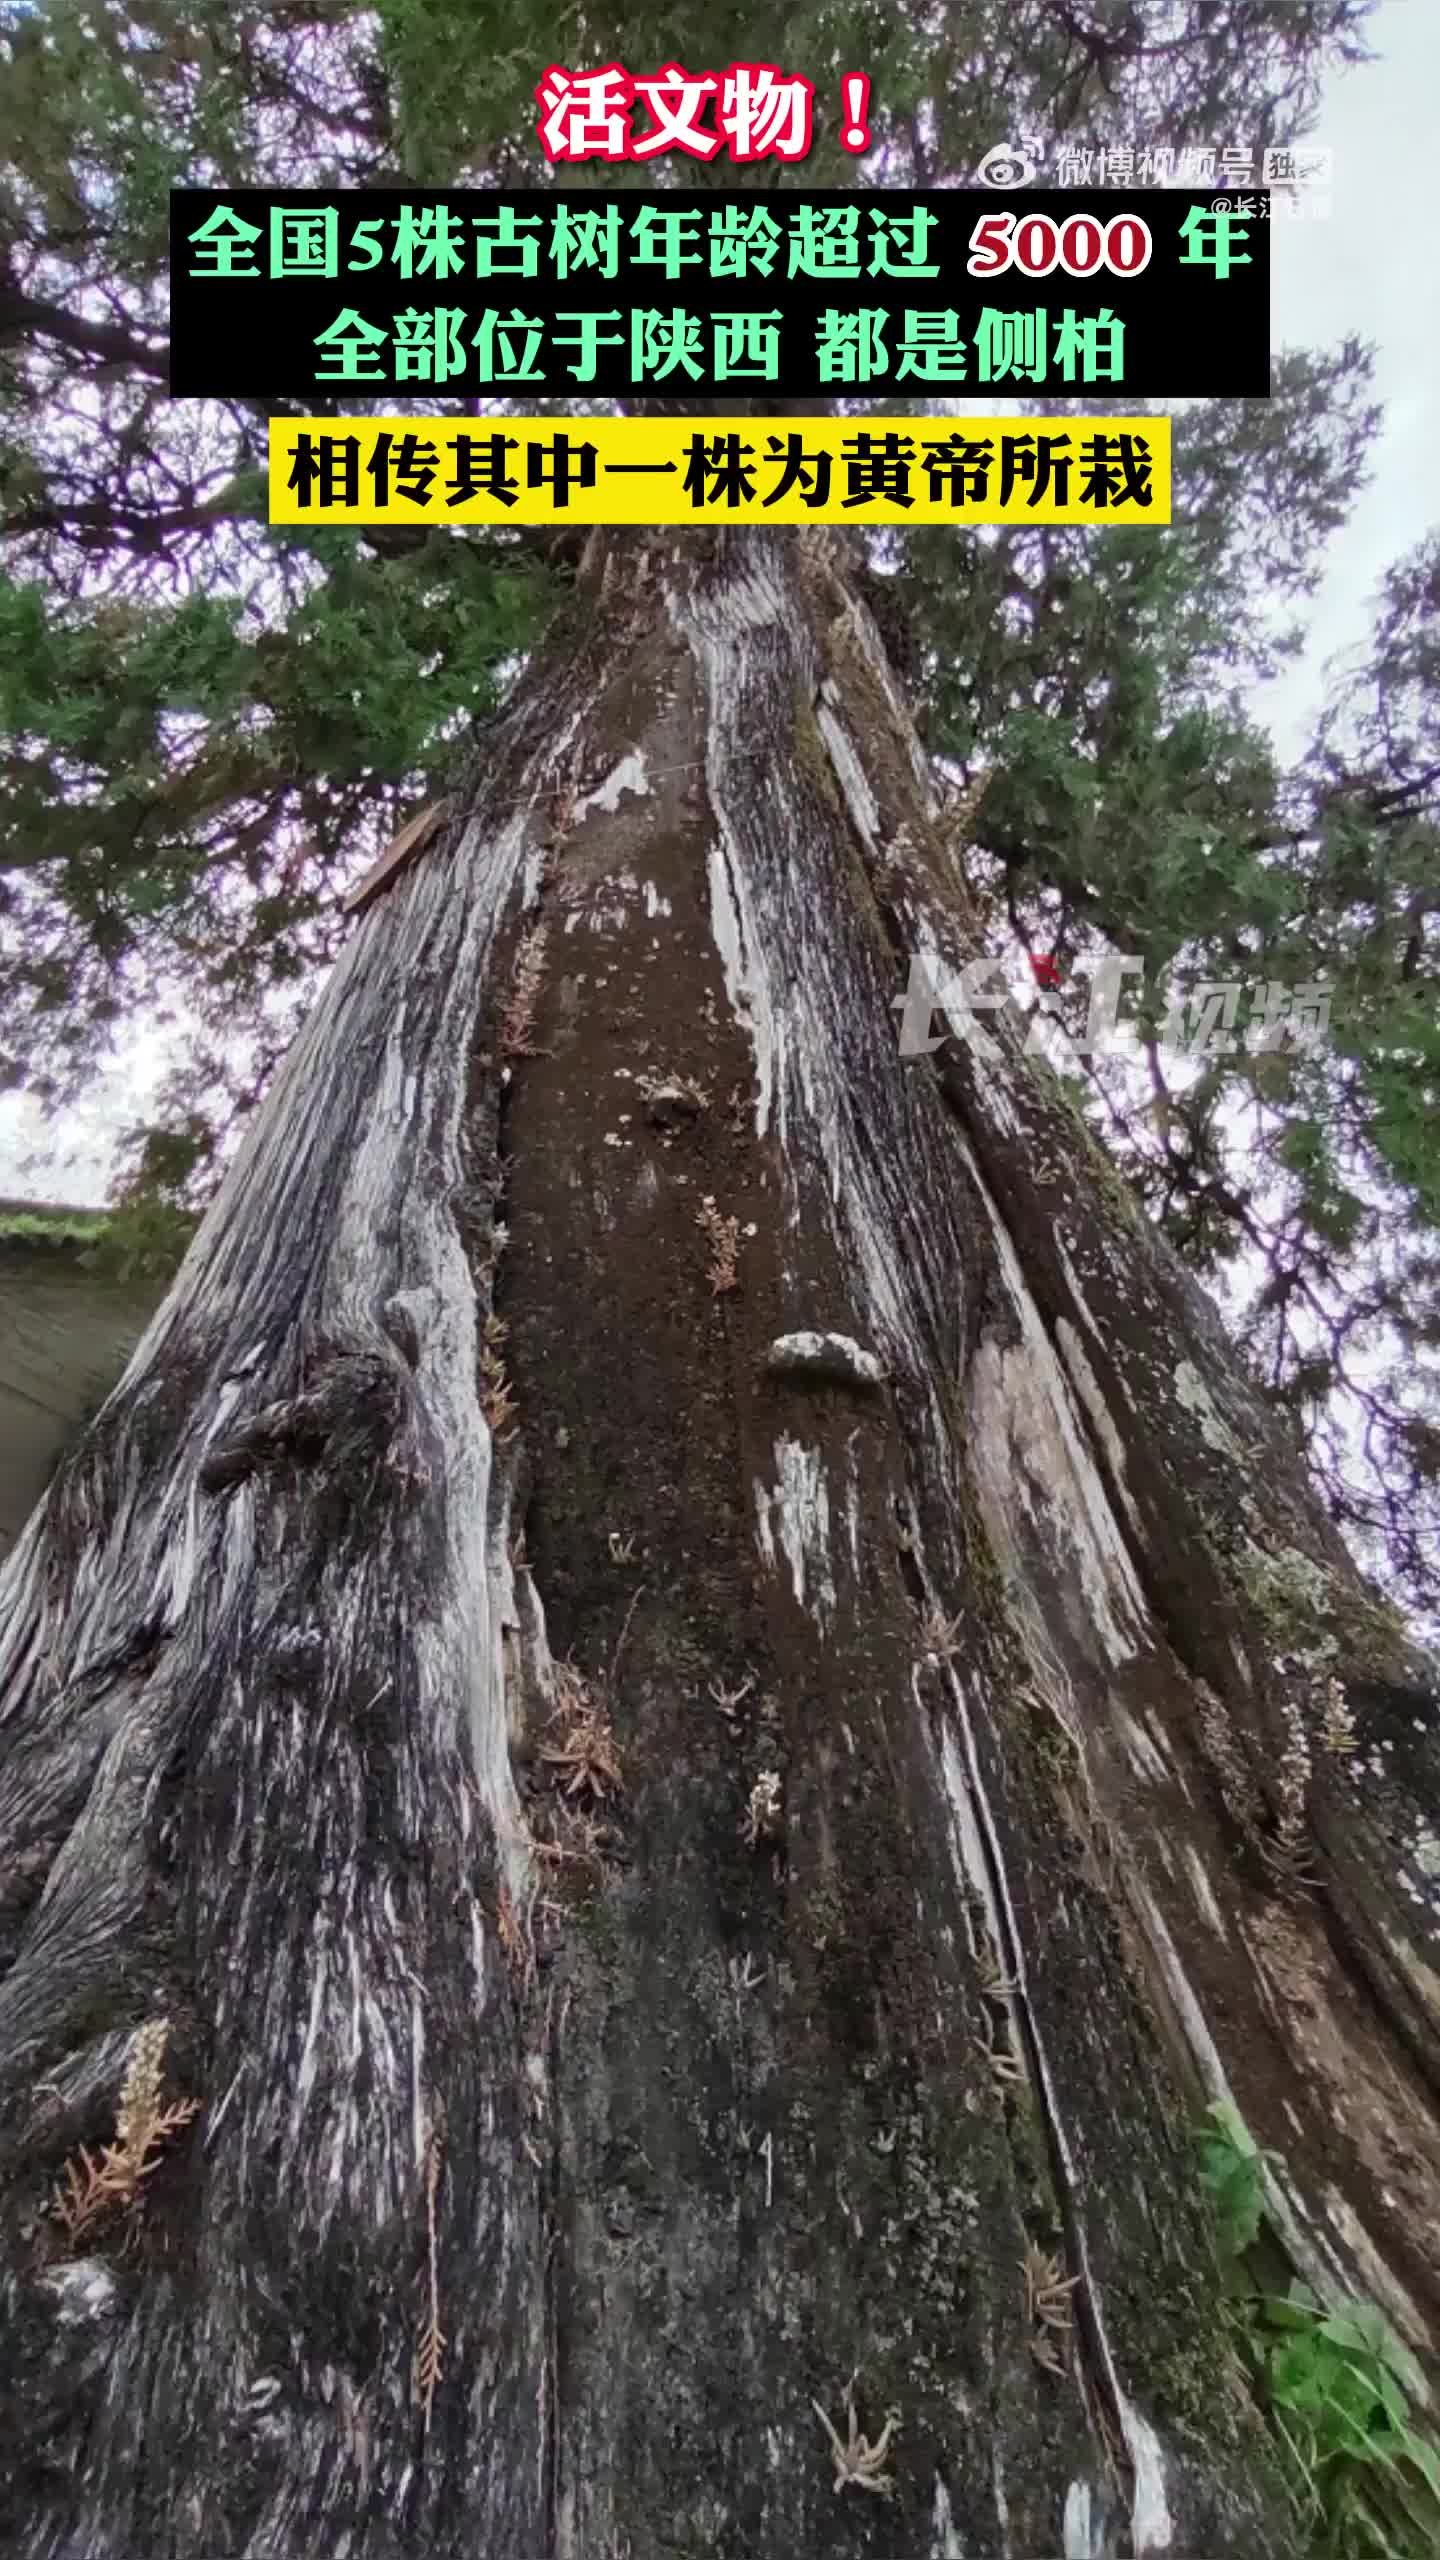 全国仅有的5株5000岁古树都在陕西